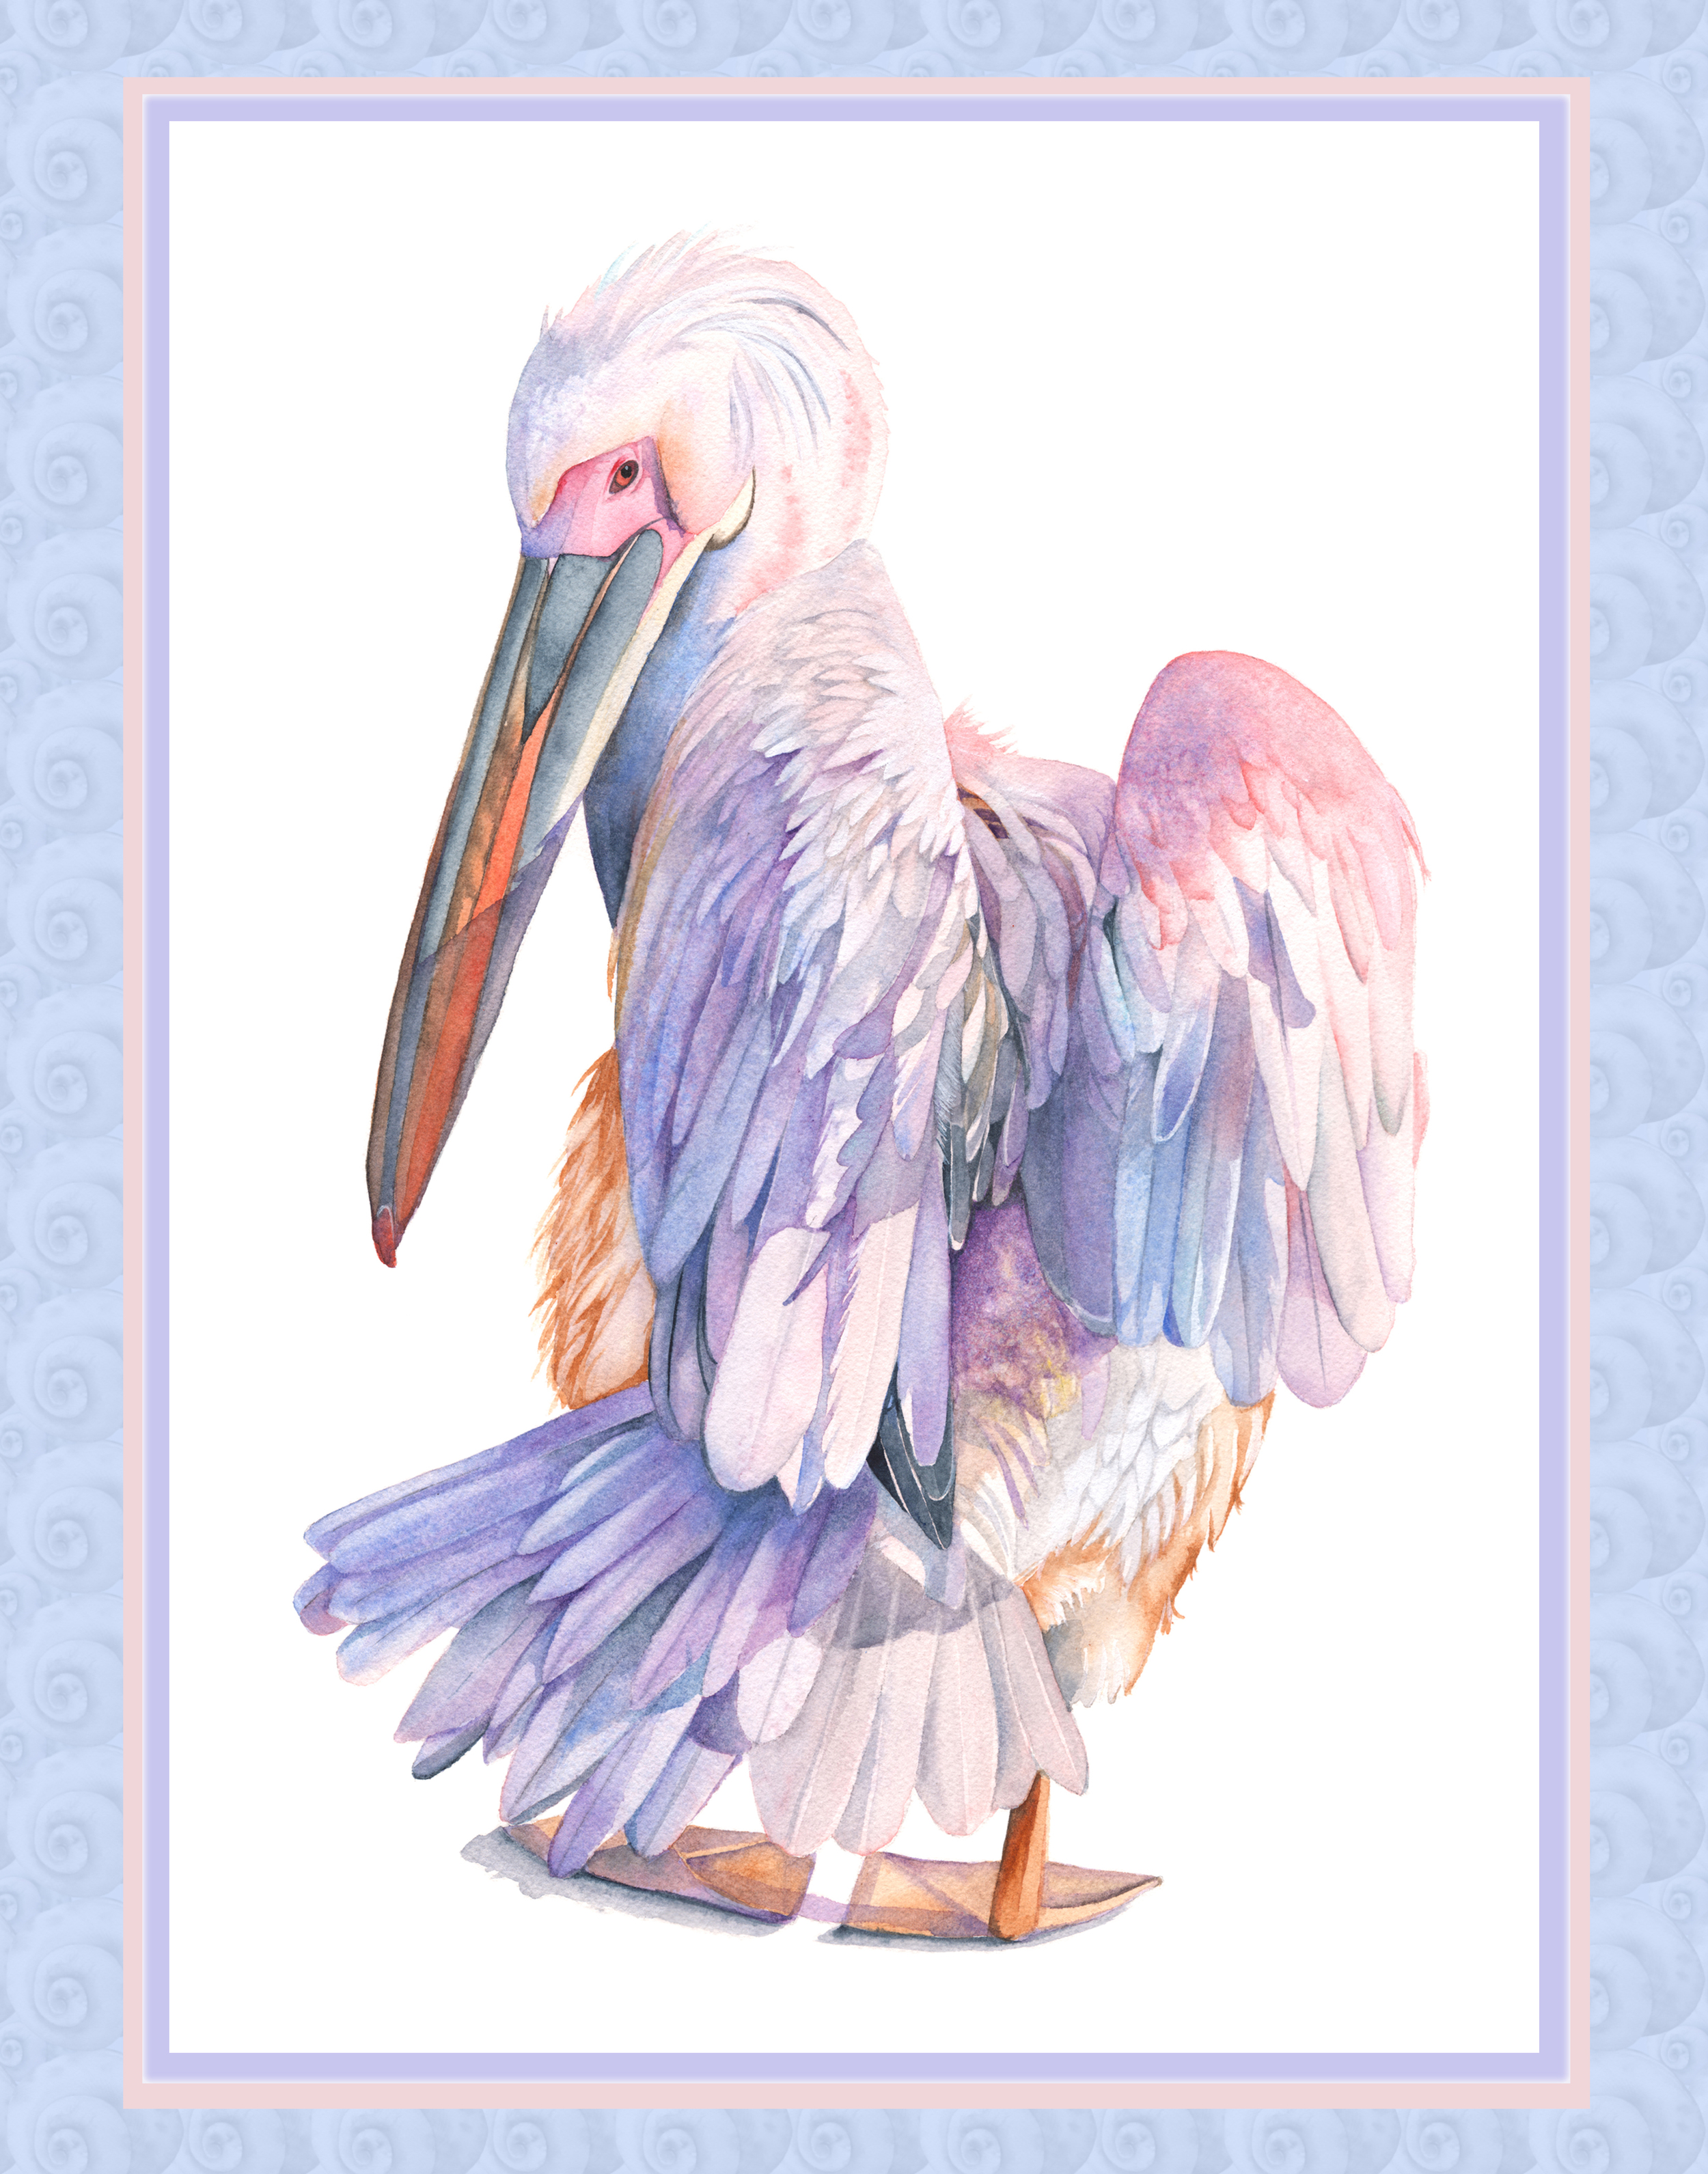 Pelican on fsnail shell pattern.jpg